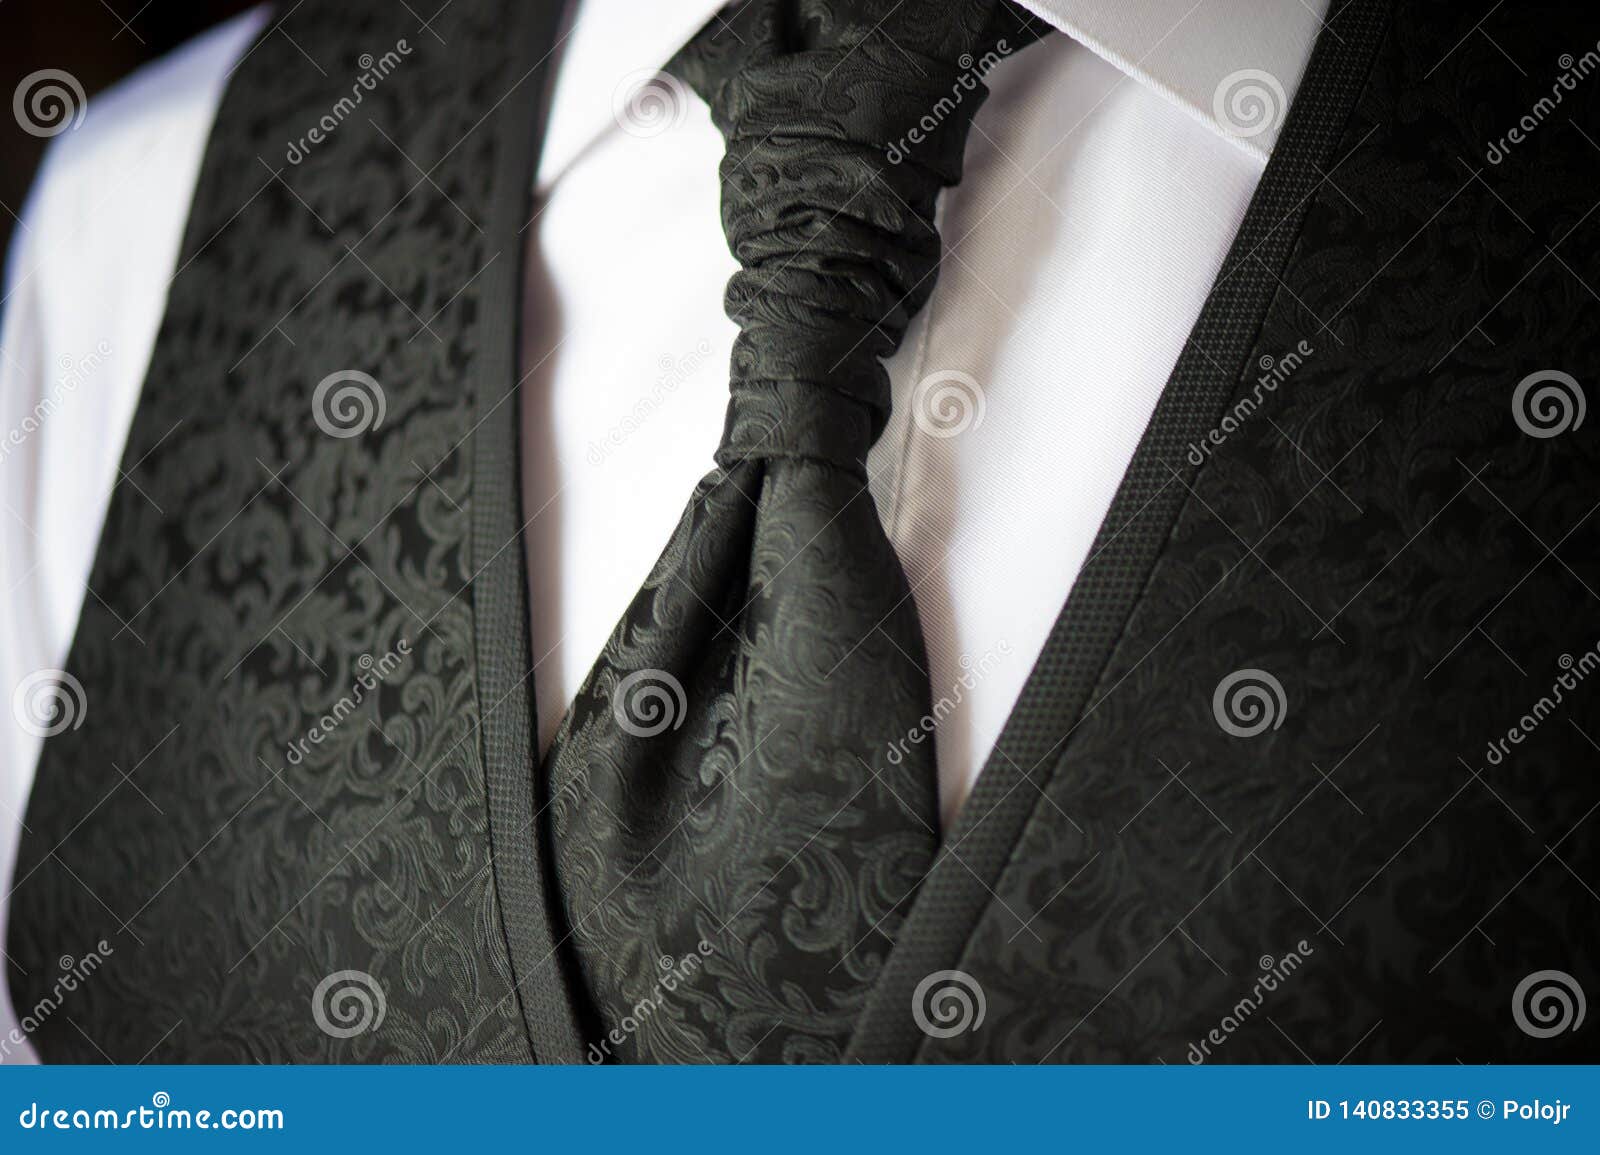 detail of tie and boyfriend vest